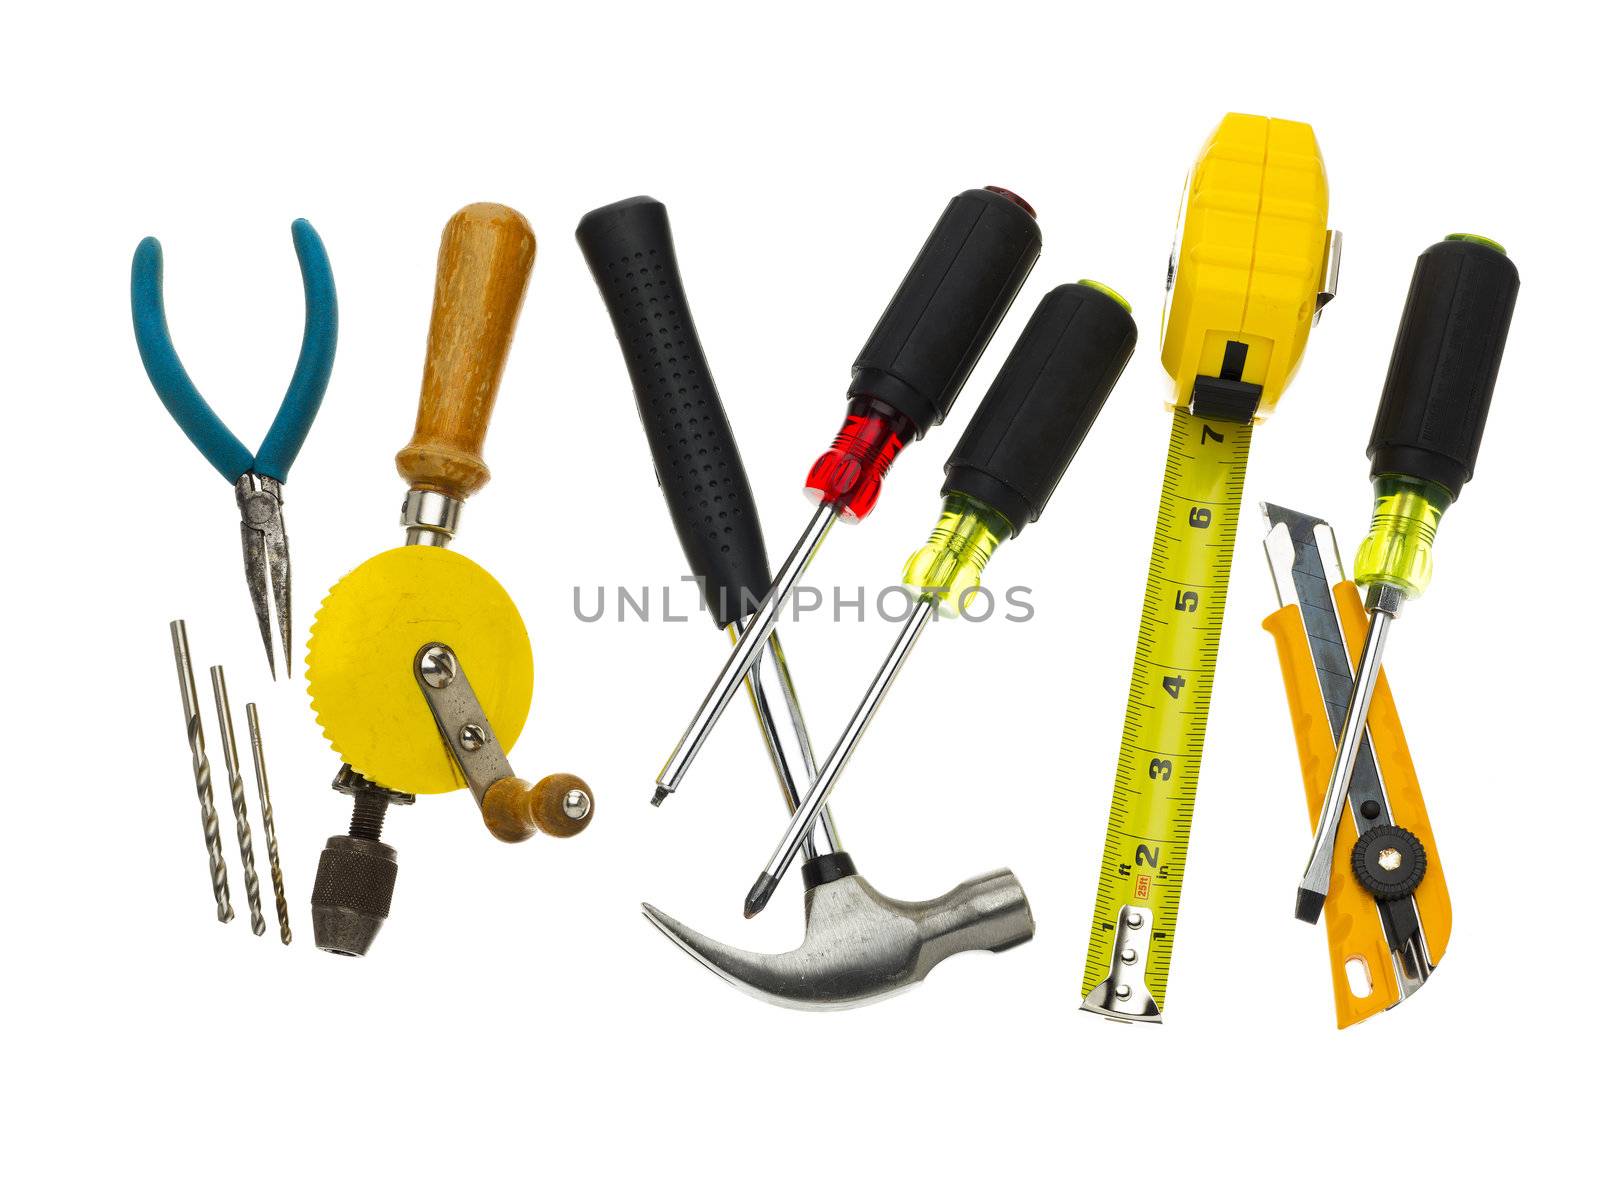 many tools by kozzi